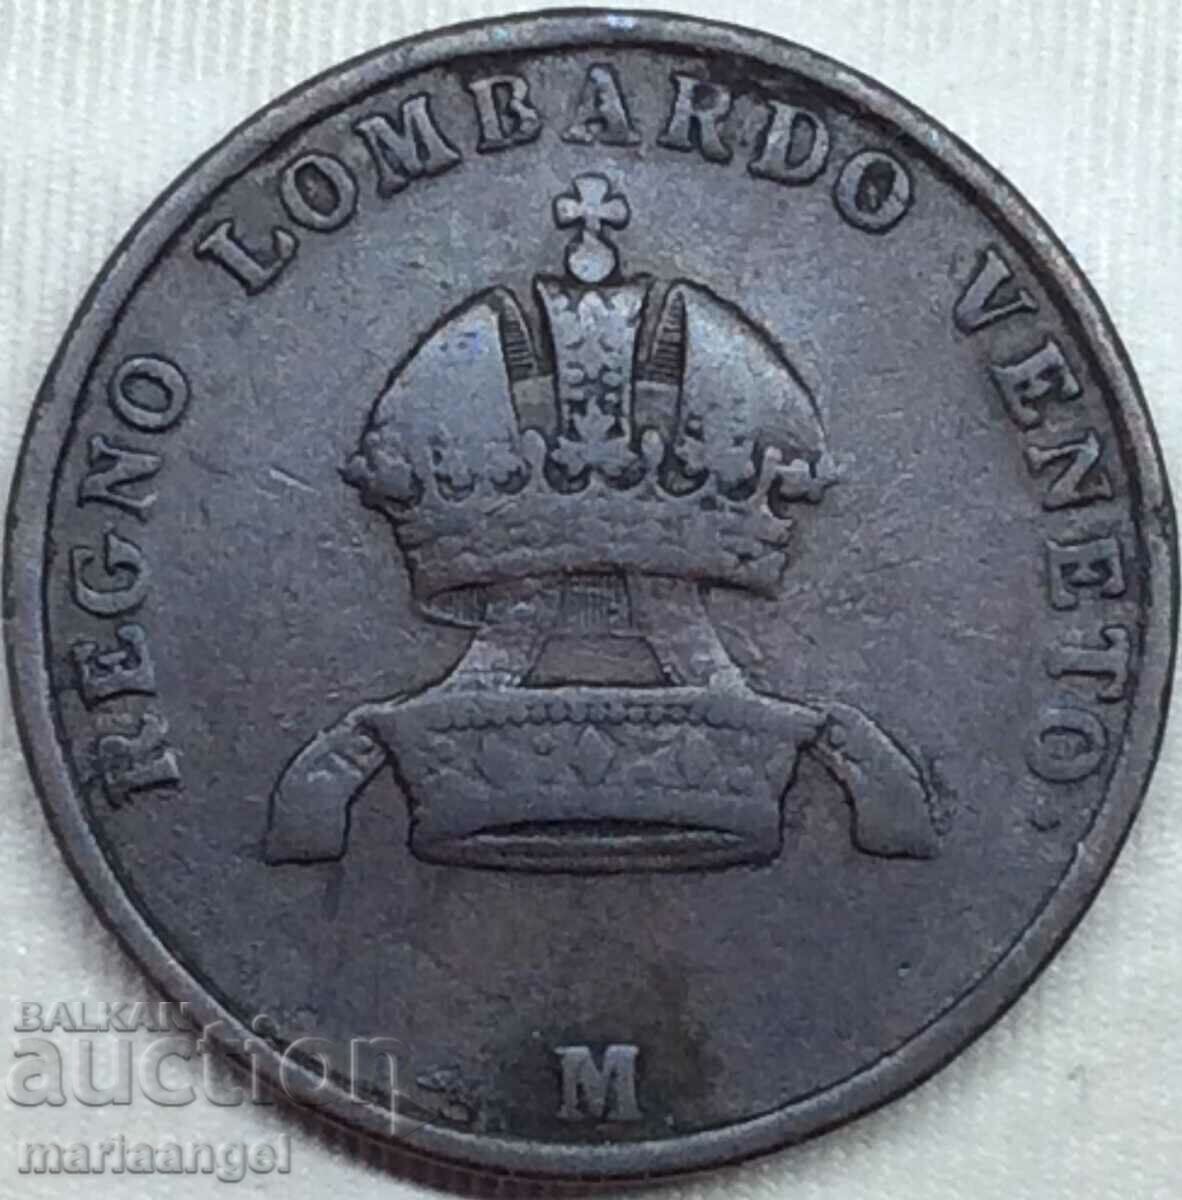 Λομβαρδία Βενετία 5 centesimi 1849 Ιταλία Μ - Μιλάνο - σπάνιο